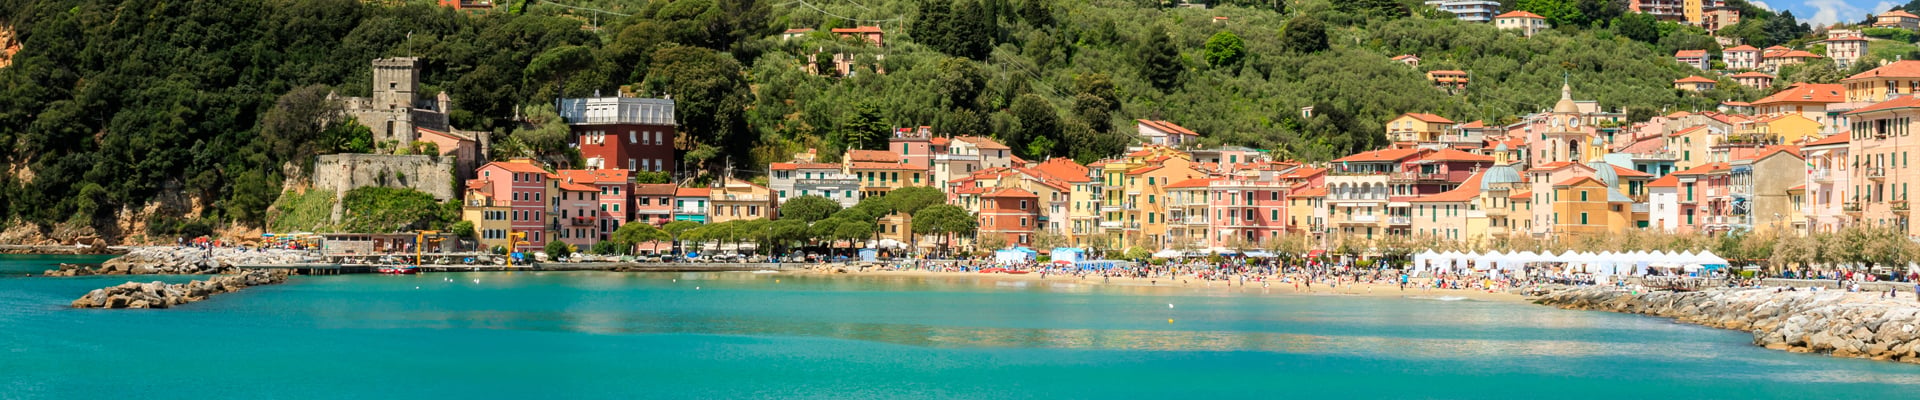 San Terenzo in Italy's Liguria Region 